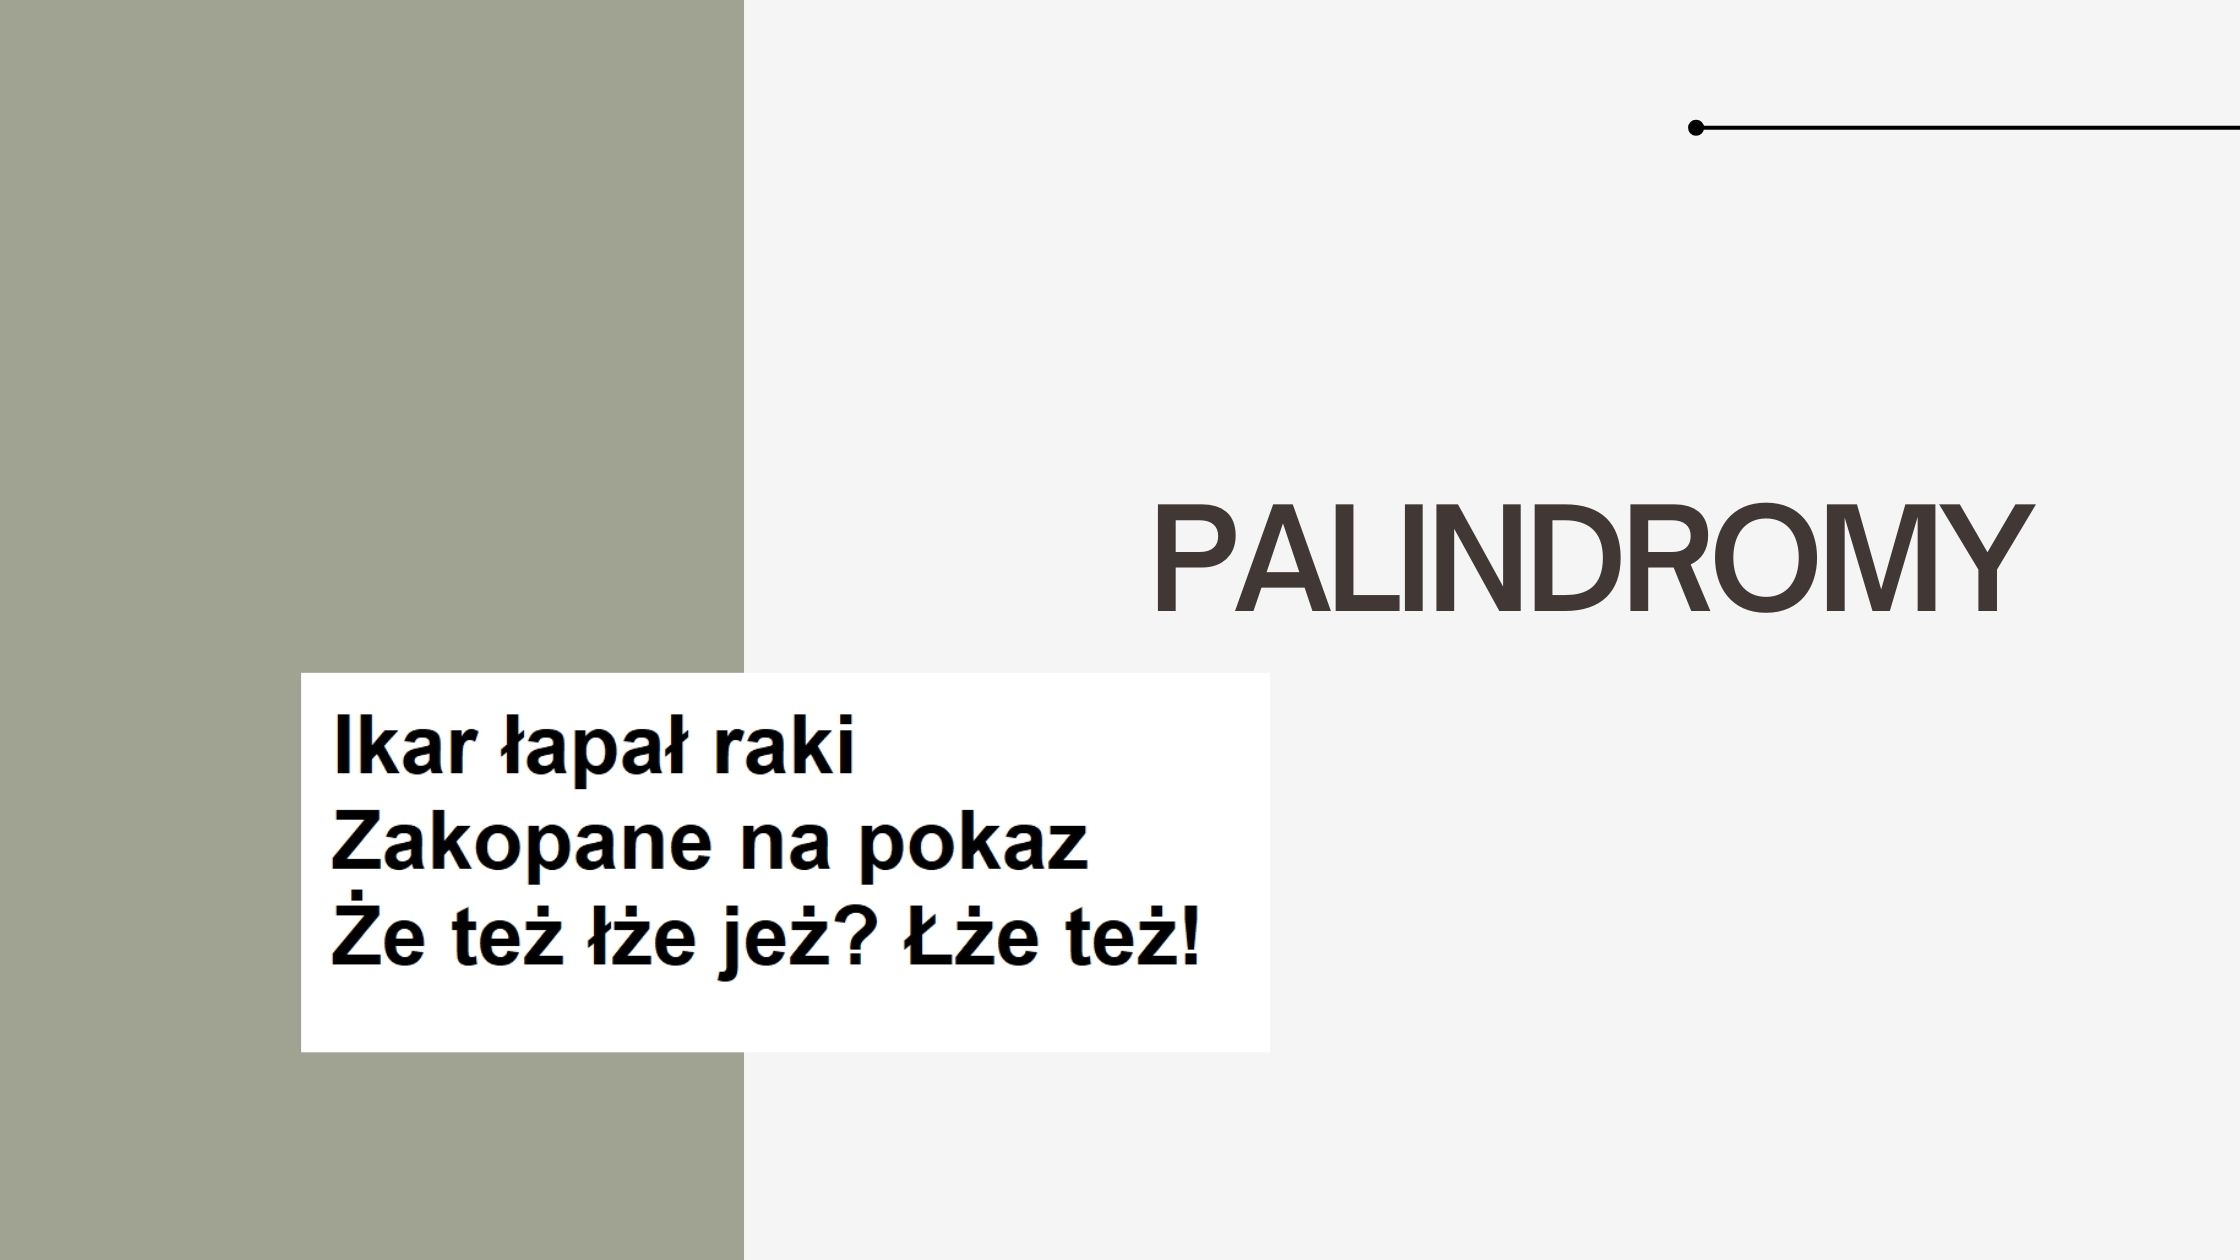 Napis Palindrom z przedstawieniem najpopularniejszych polskich palindromów: Ikar łapał raki, Zakopane na pokaz, Że też łże jeż? Łże też!